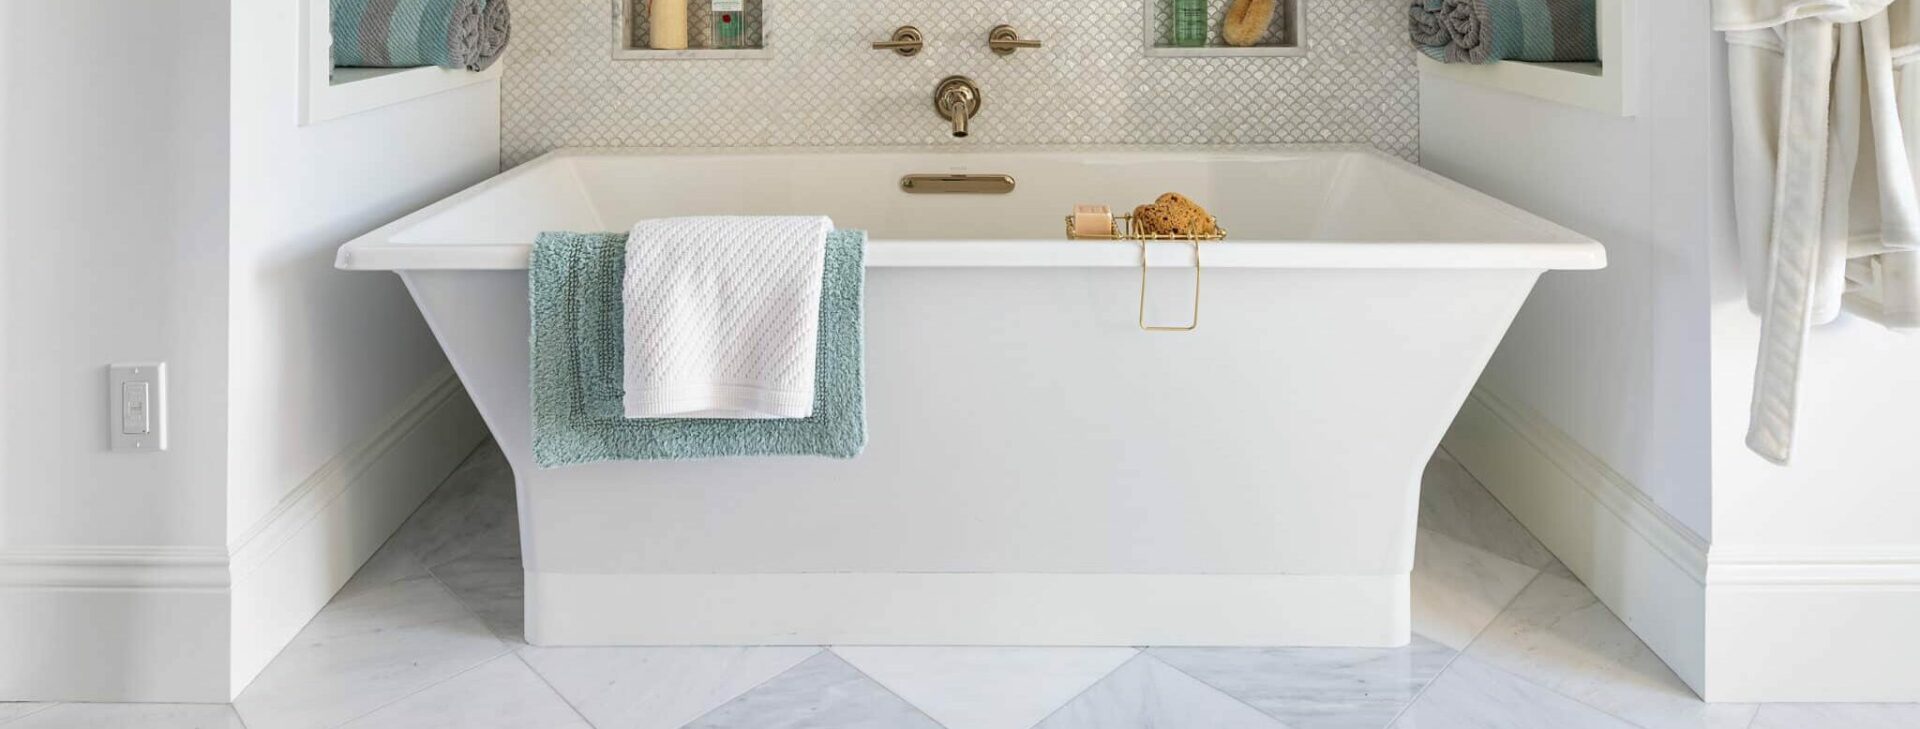 luxury bathroom with a beautiful bathtub on a tile floor